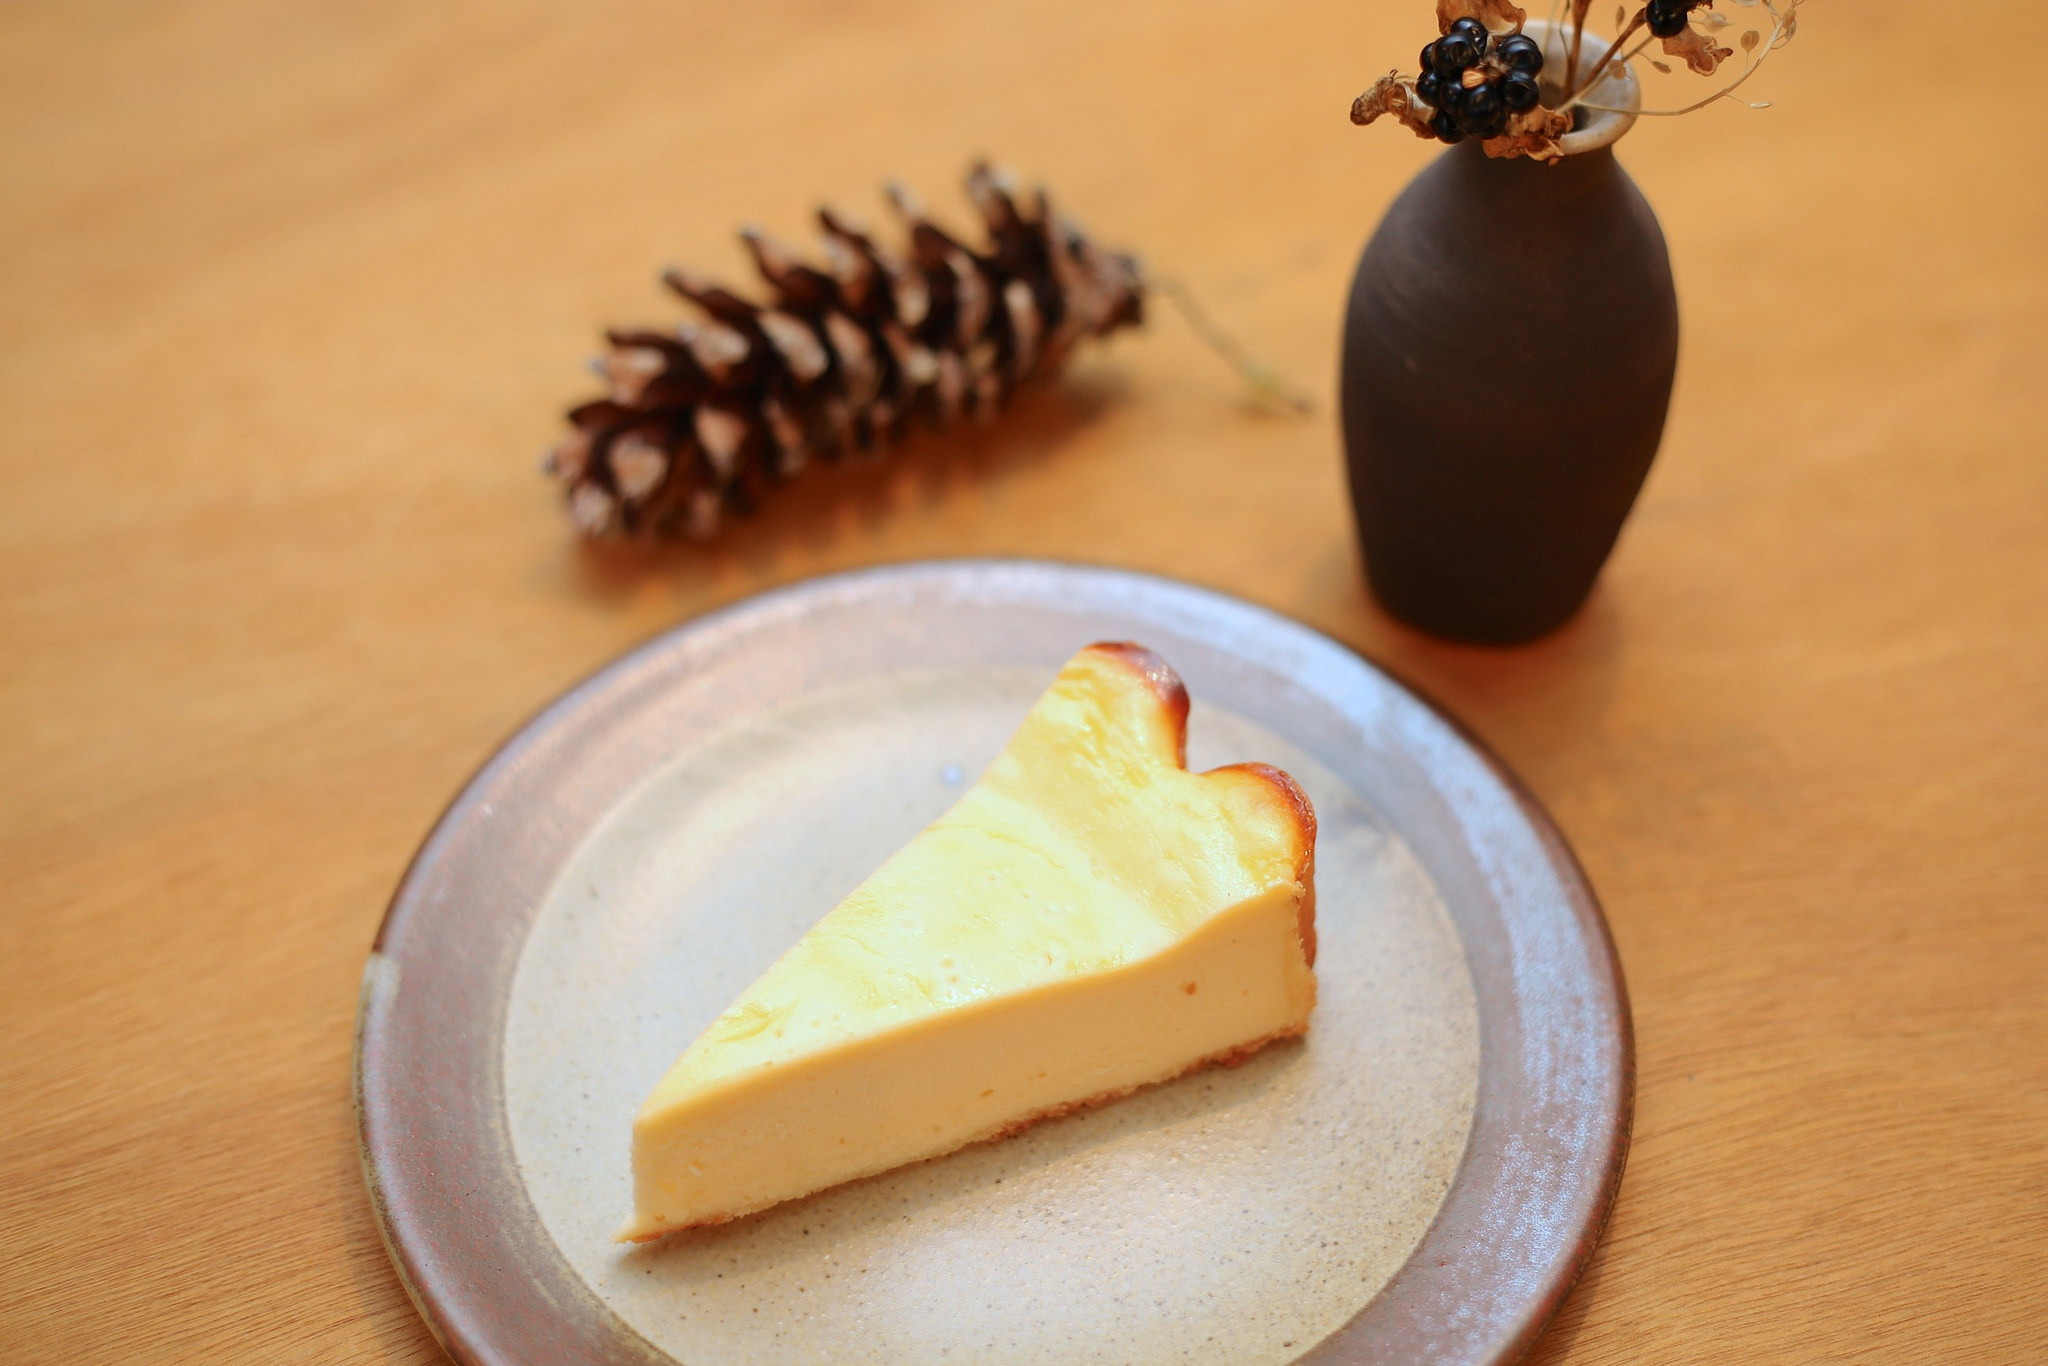 19年続くエッフェル洋菓子店のチーズケーキは父の味から受け継いだレシピ。強めの焼きで中は半レア、濃厚なチーズケーキです。